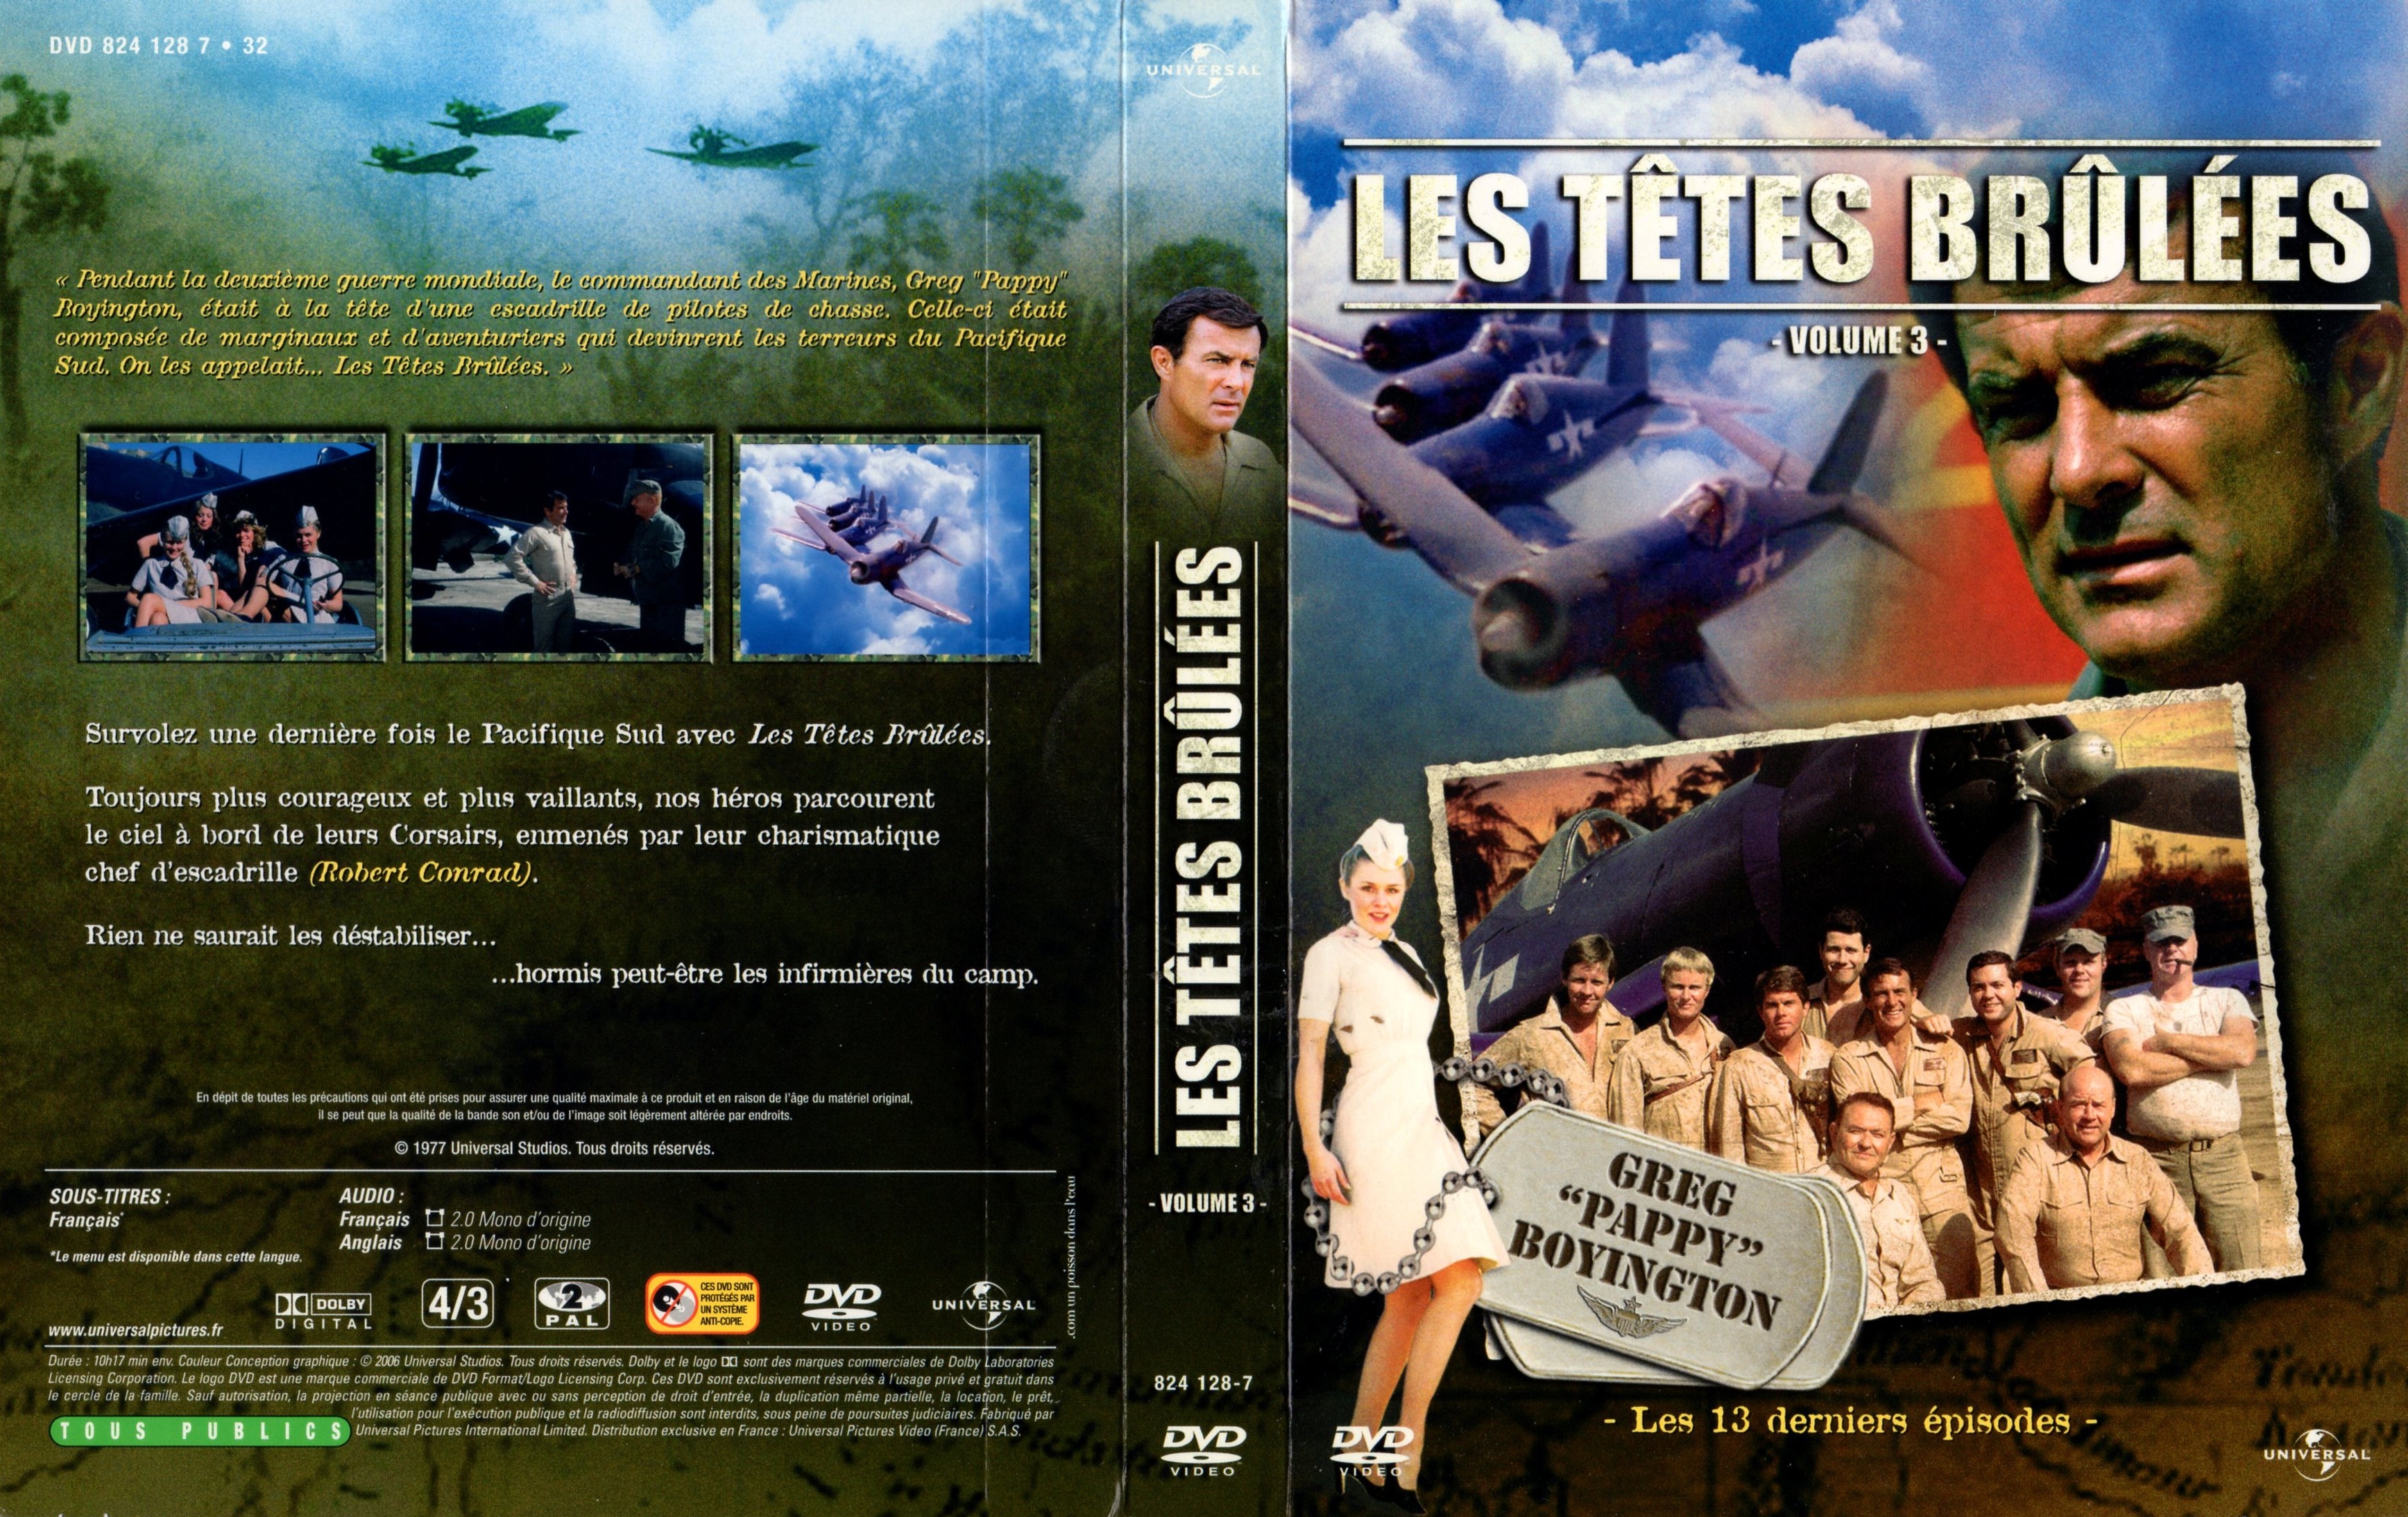 Jaquette DVD Les ttes brules vol 3